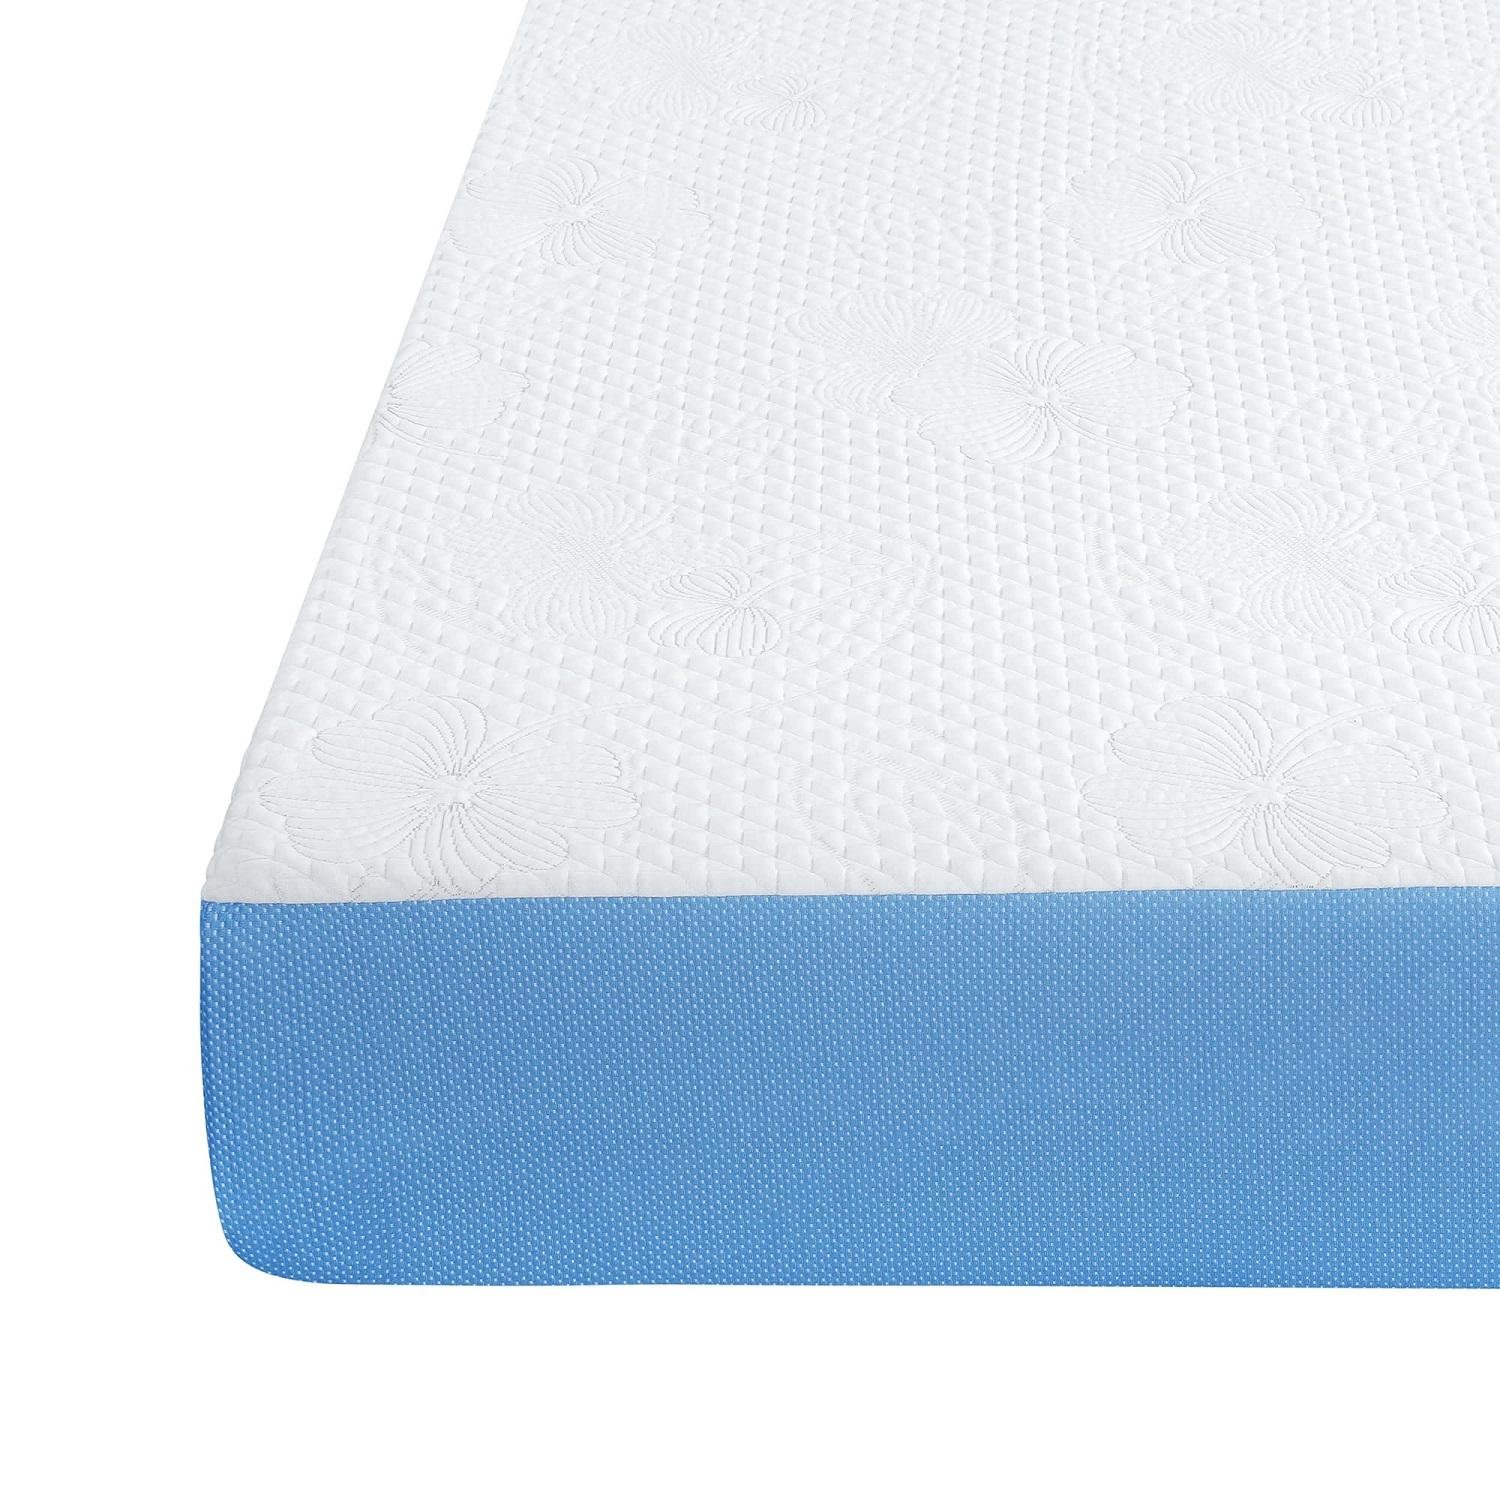 Soft Foam Sleep Rest Mattress Pocket Innerspring Natural Latex Sponge Mattress 3